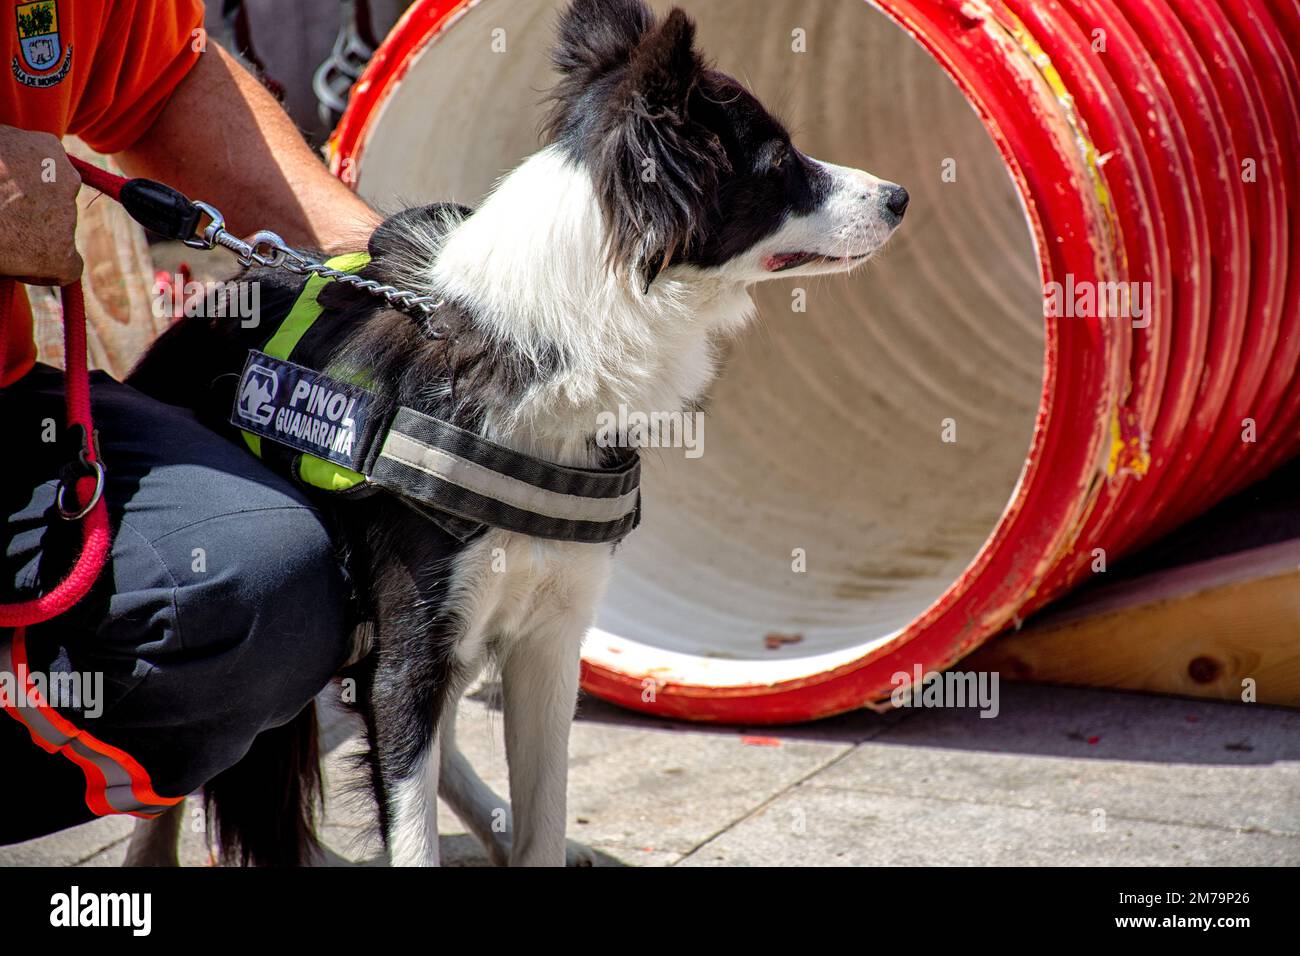 Exhibición rescue operation, dog, galapagar, exhibición de rescate canino, Galapagar Stock Photo